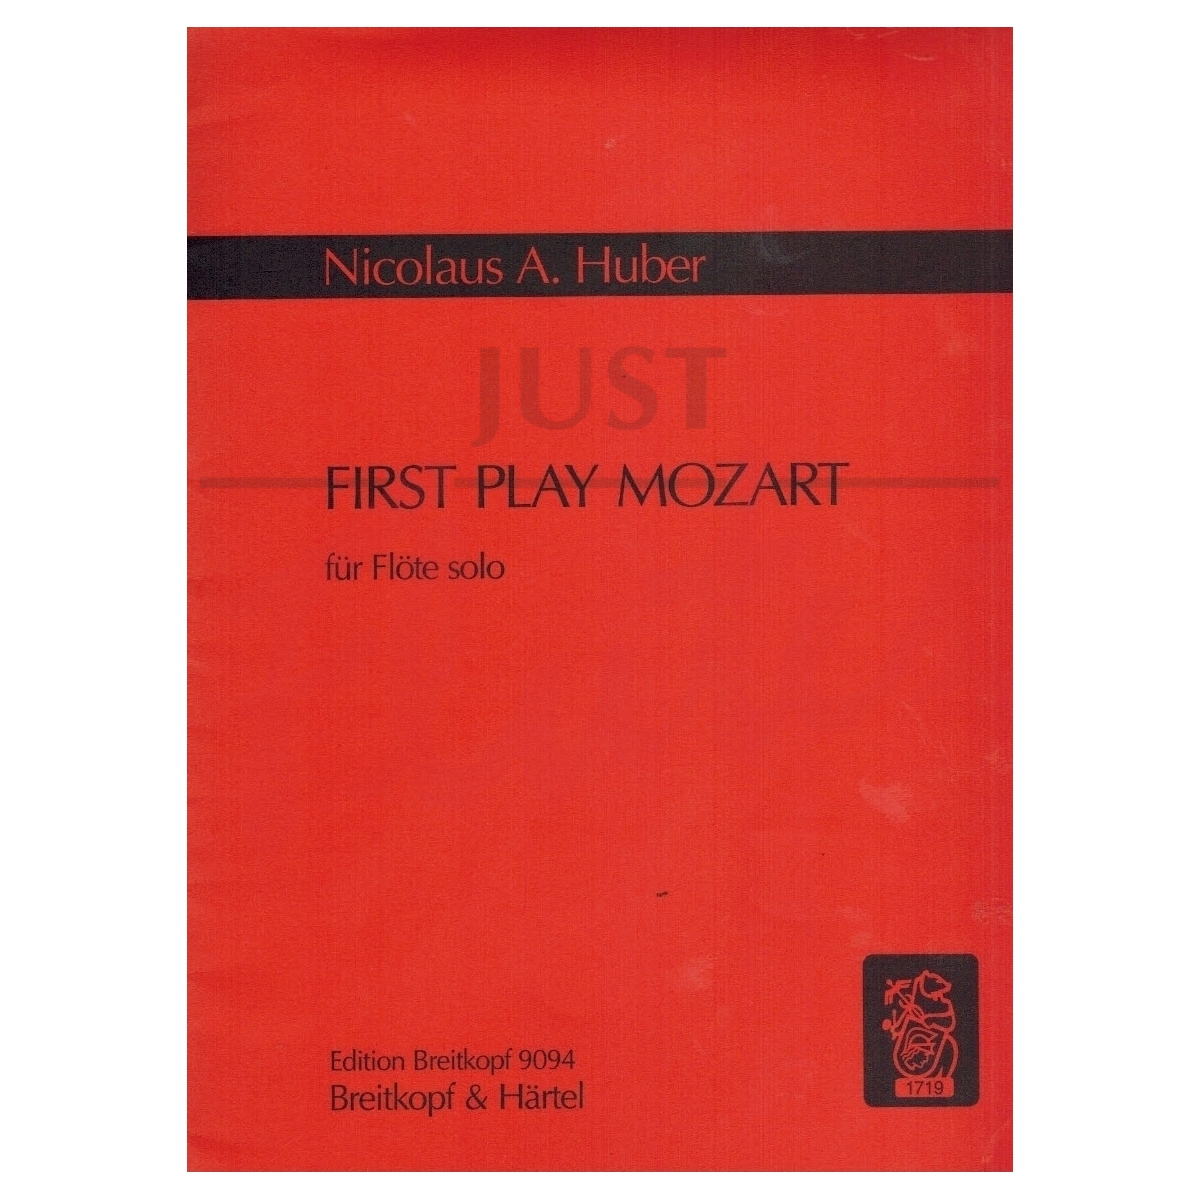 First Play Mozart